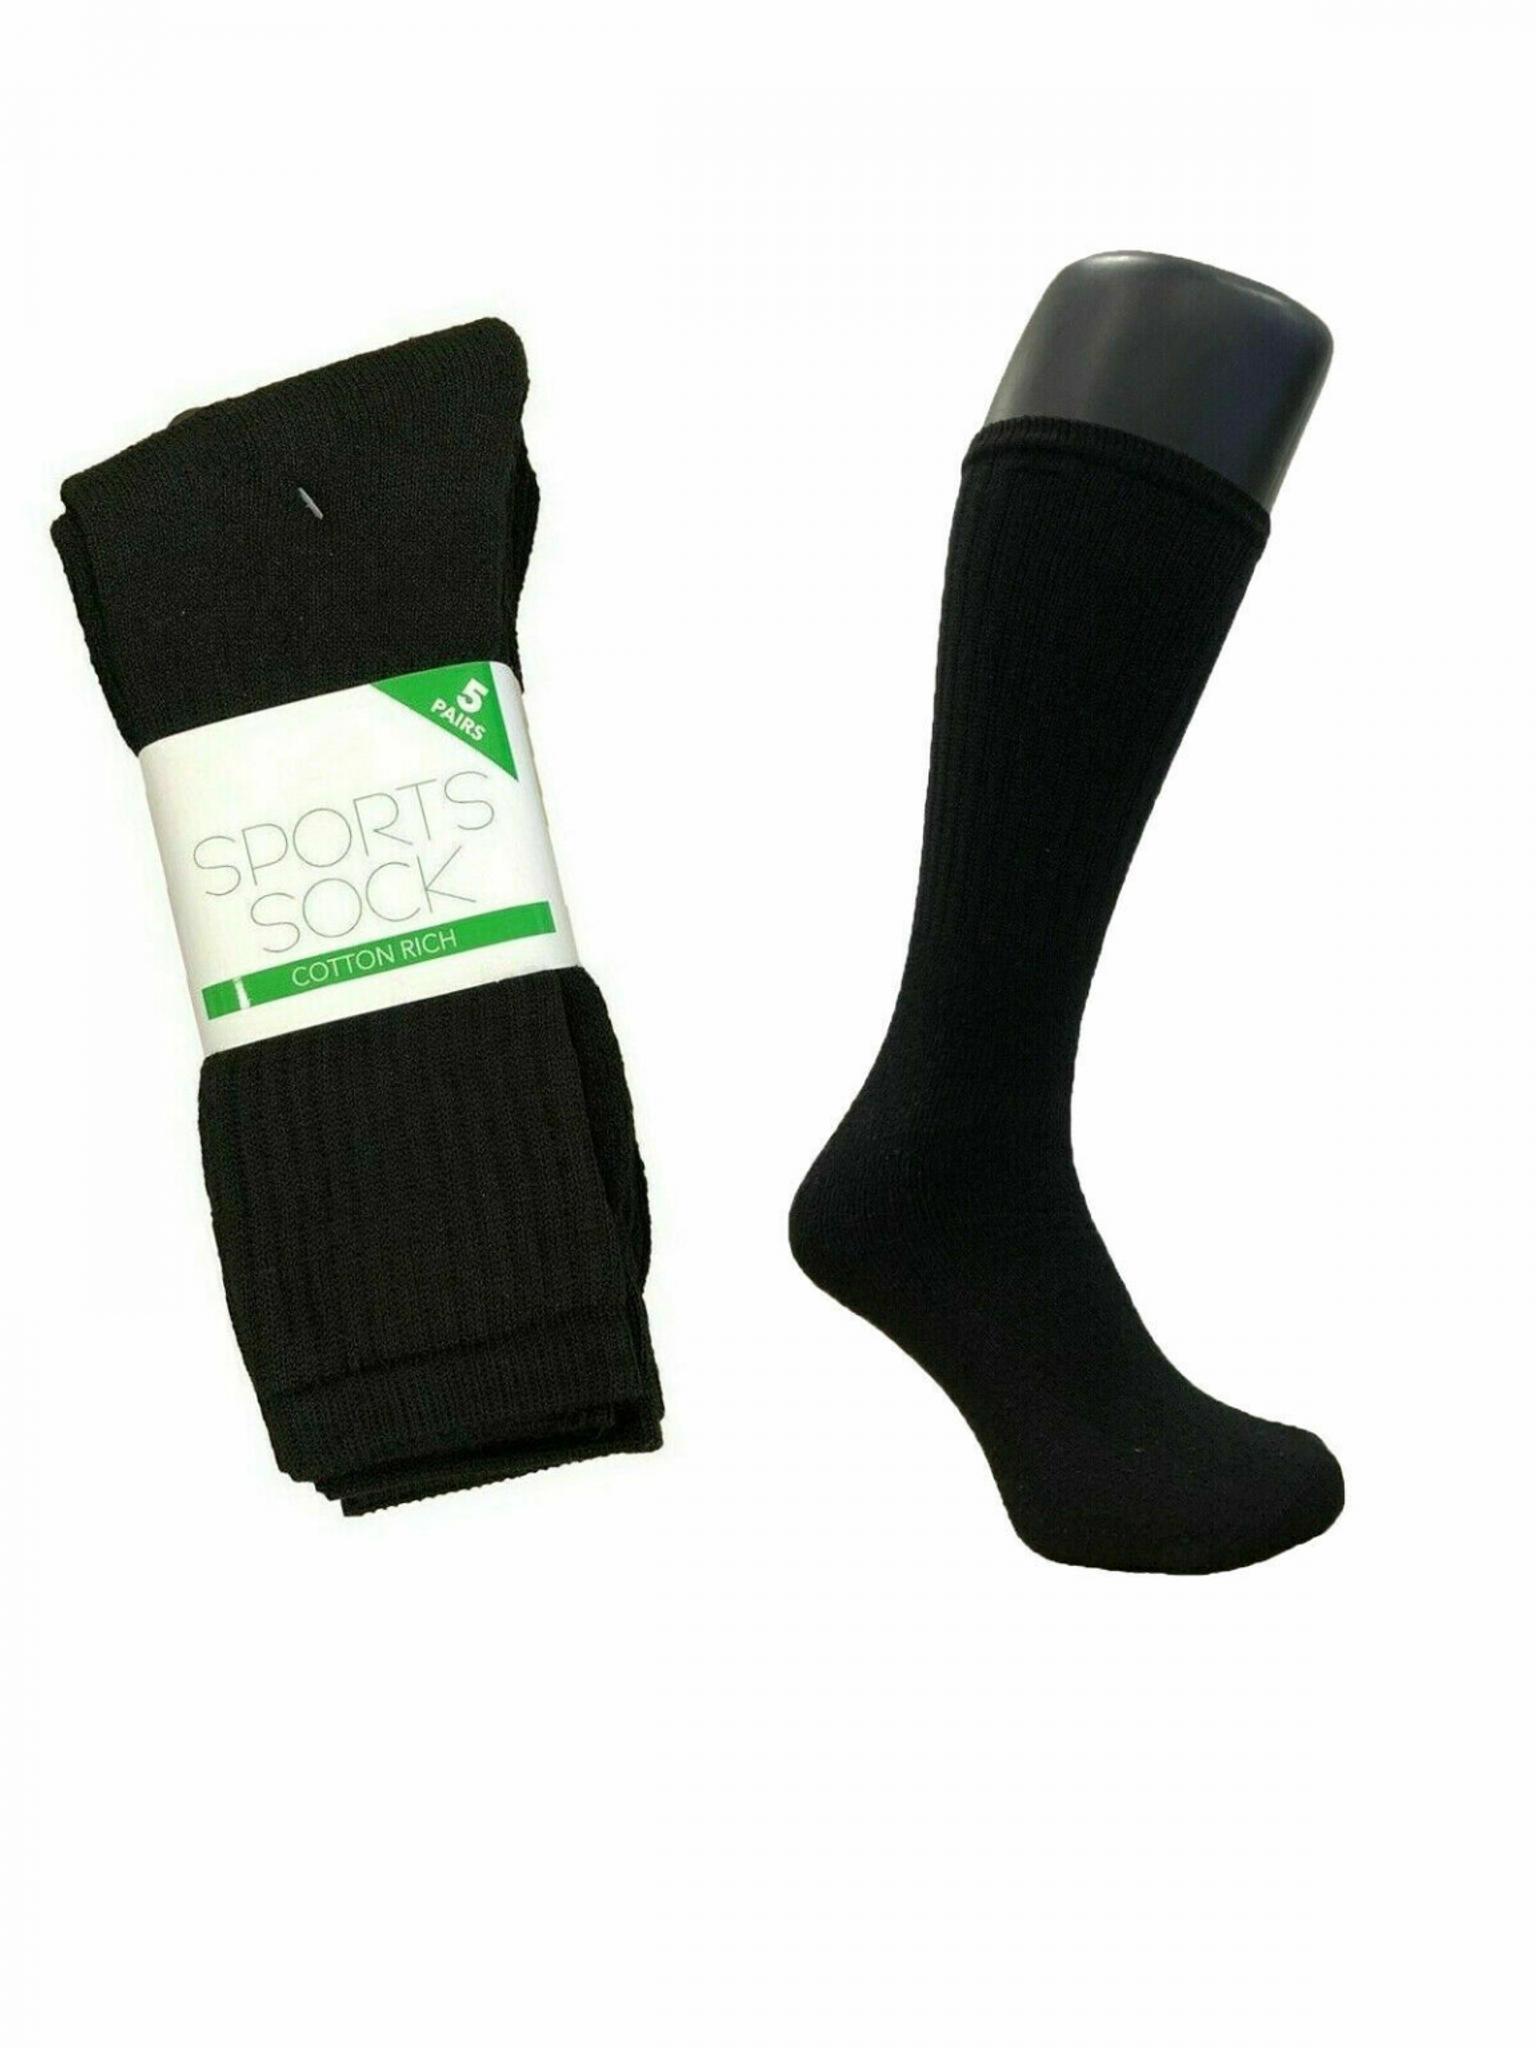 High Quality 6 Pair Unisex Cotton Rich Sport Socks Shoe Size 6-11 